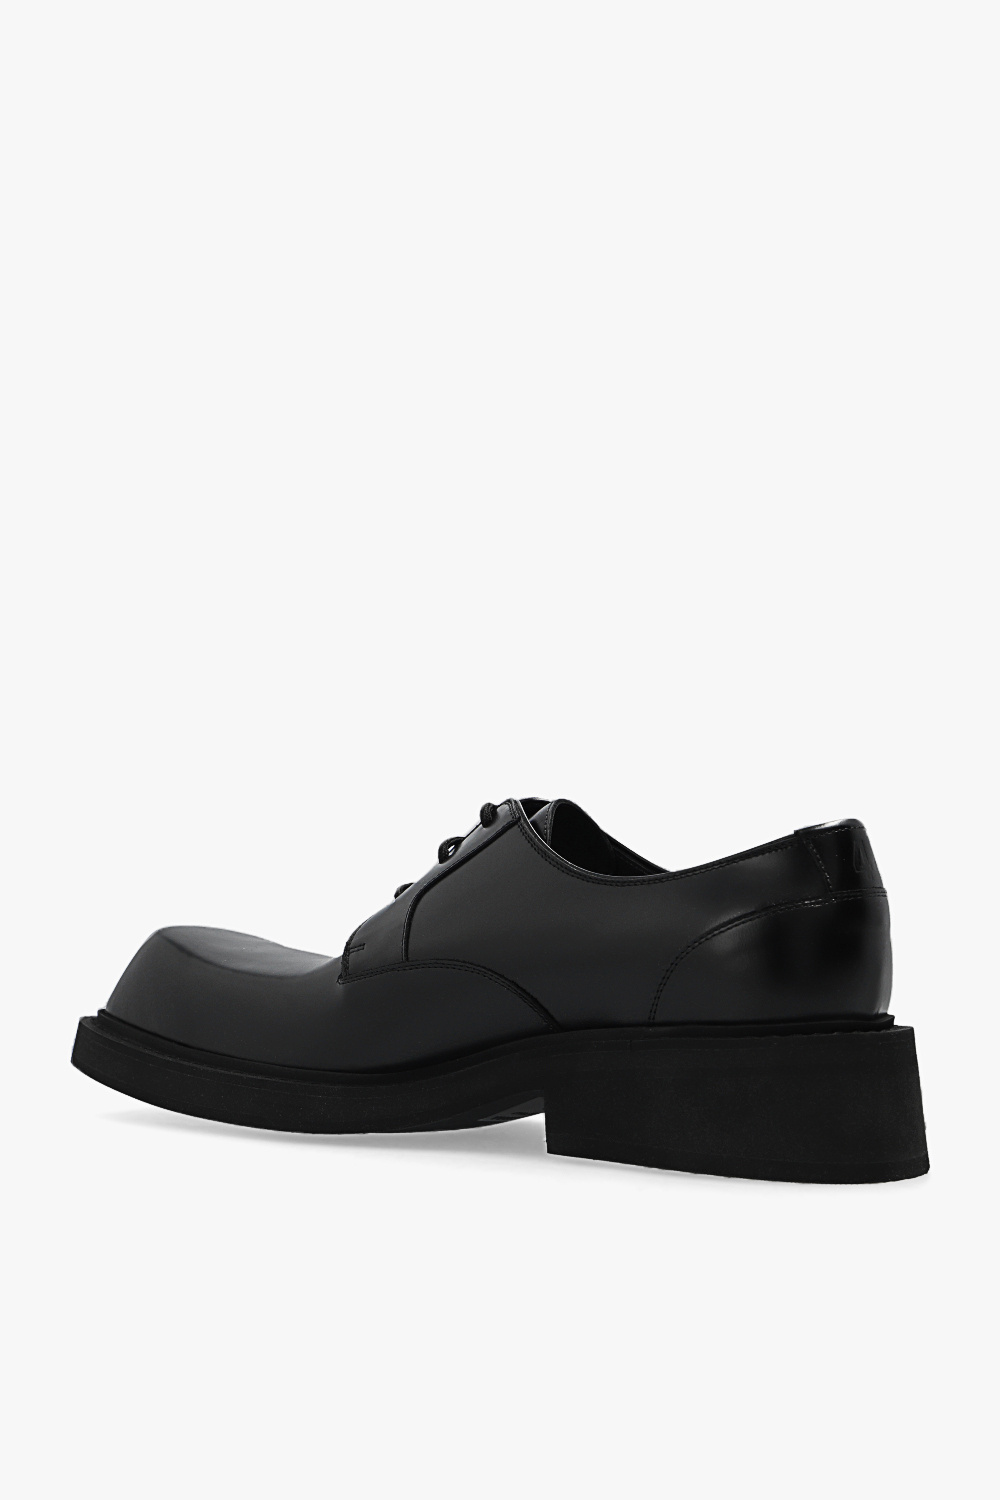 Balenciaga 'Inspector' Derby shoes | Men's Shoes | Vitkac